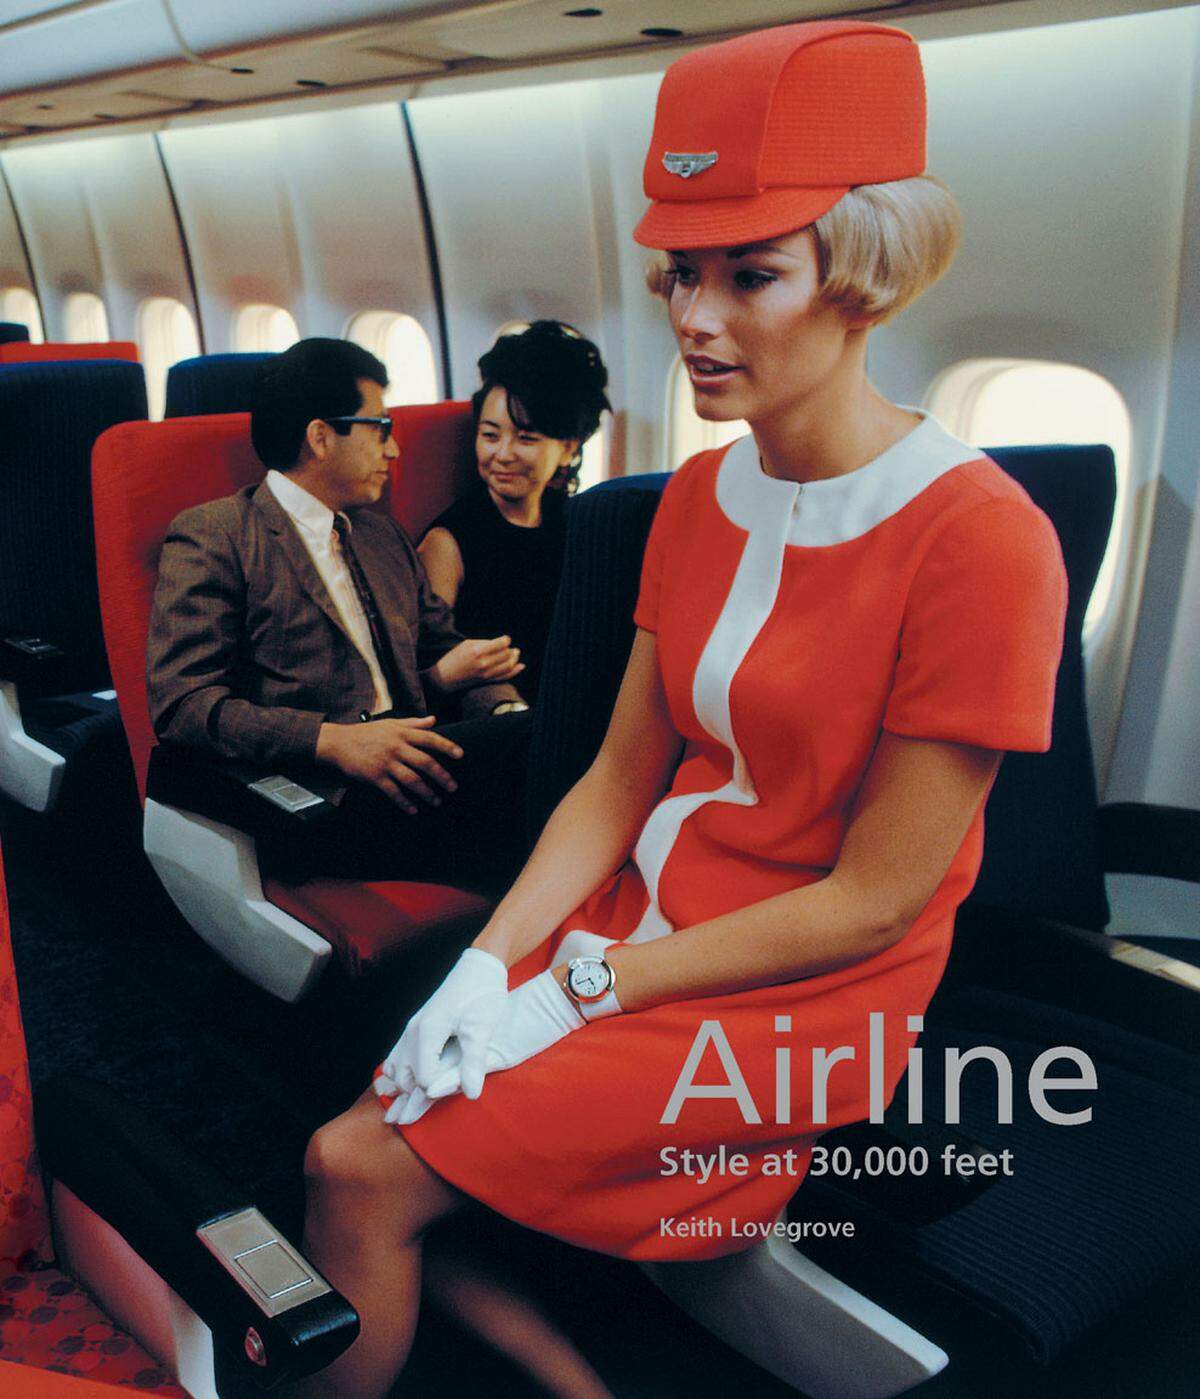 Das glamouröse Leben der Stewardessen ab den 1920er-Jahren beleuchtet der Bildband "Airline: Style at 30,000 feet" von Keith Lovegrove.